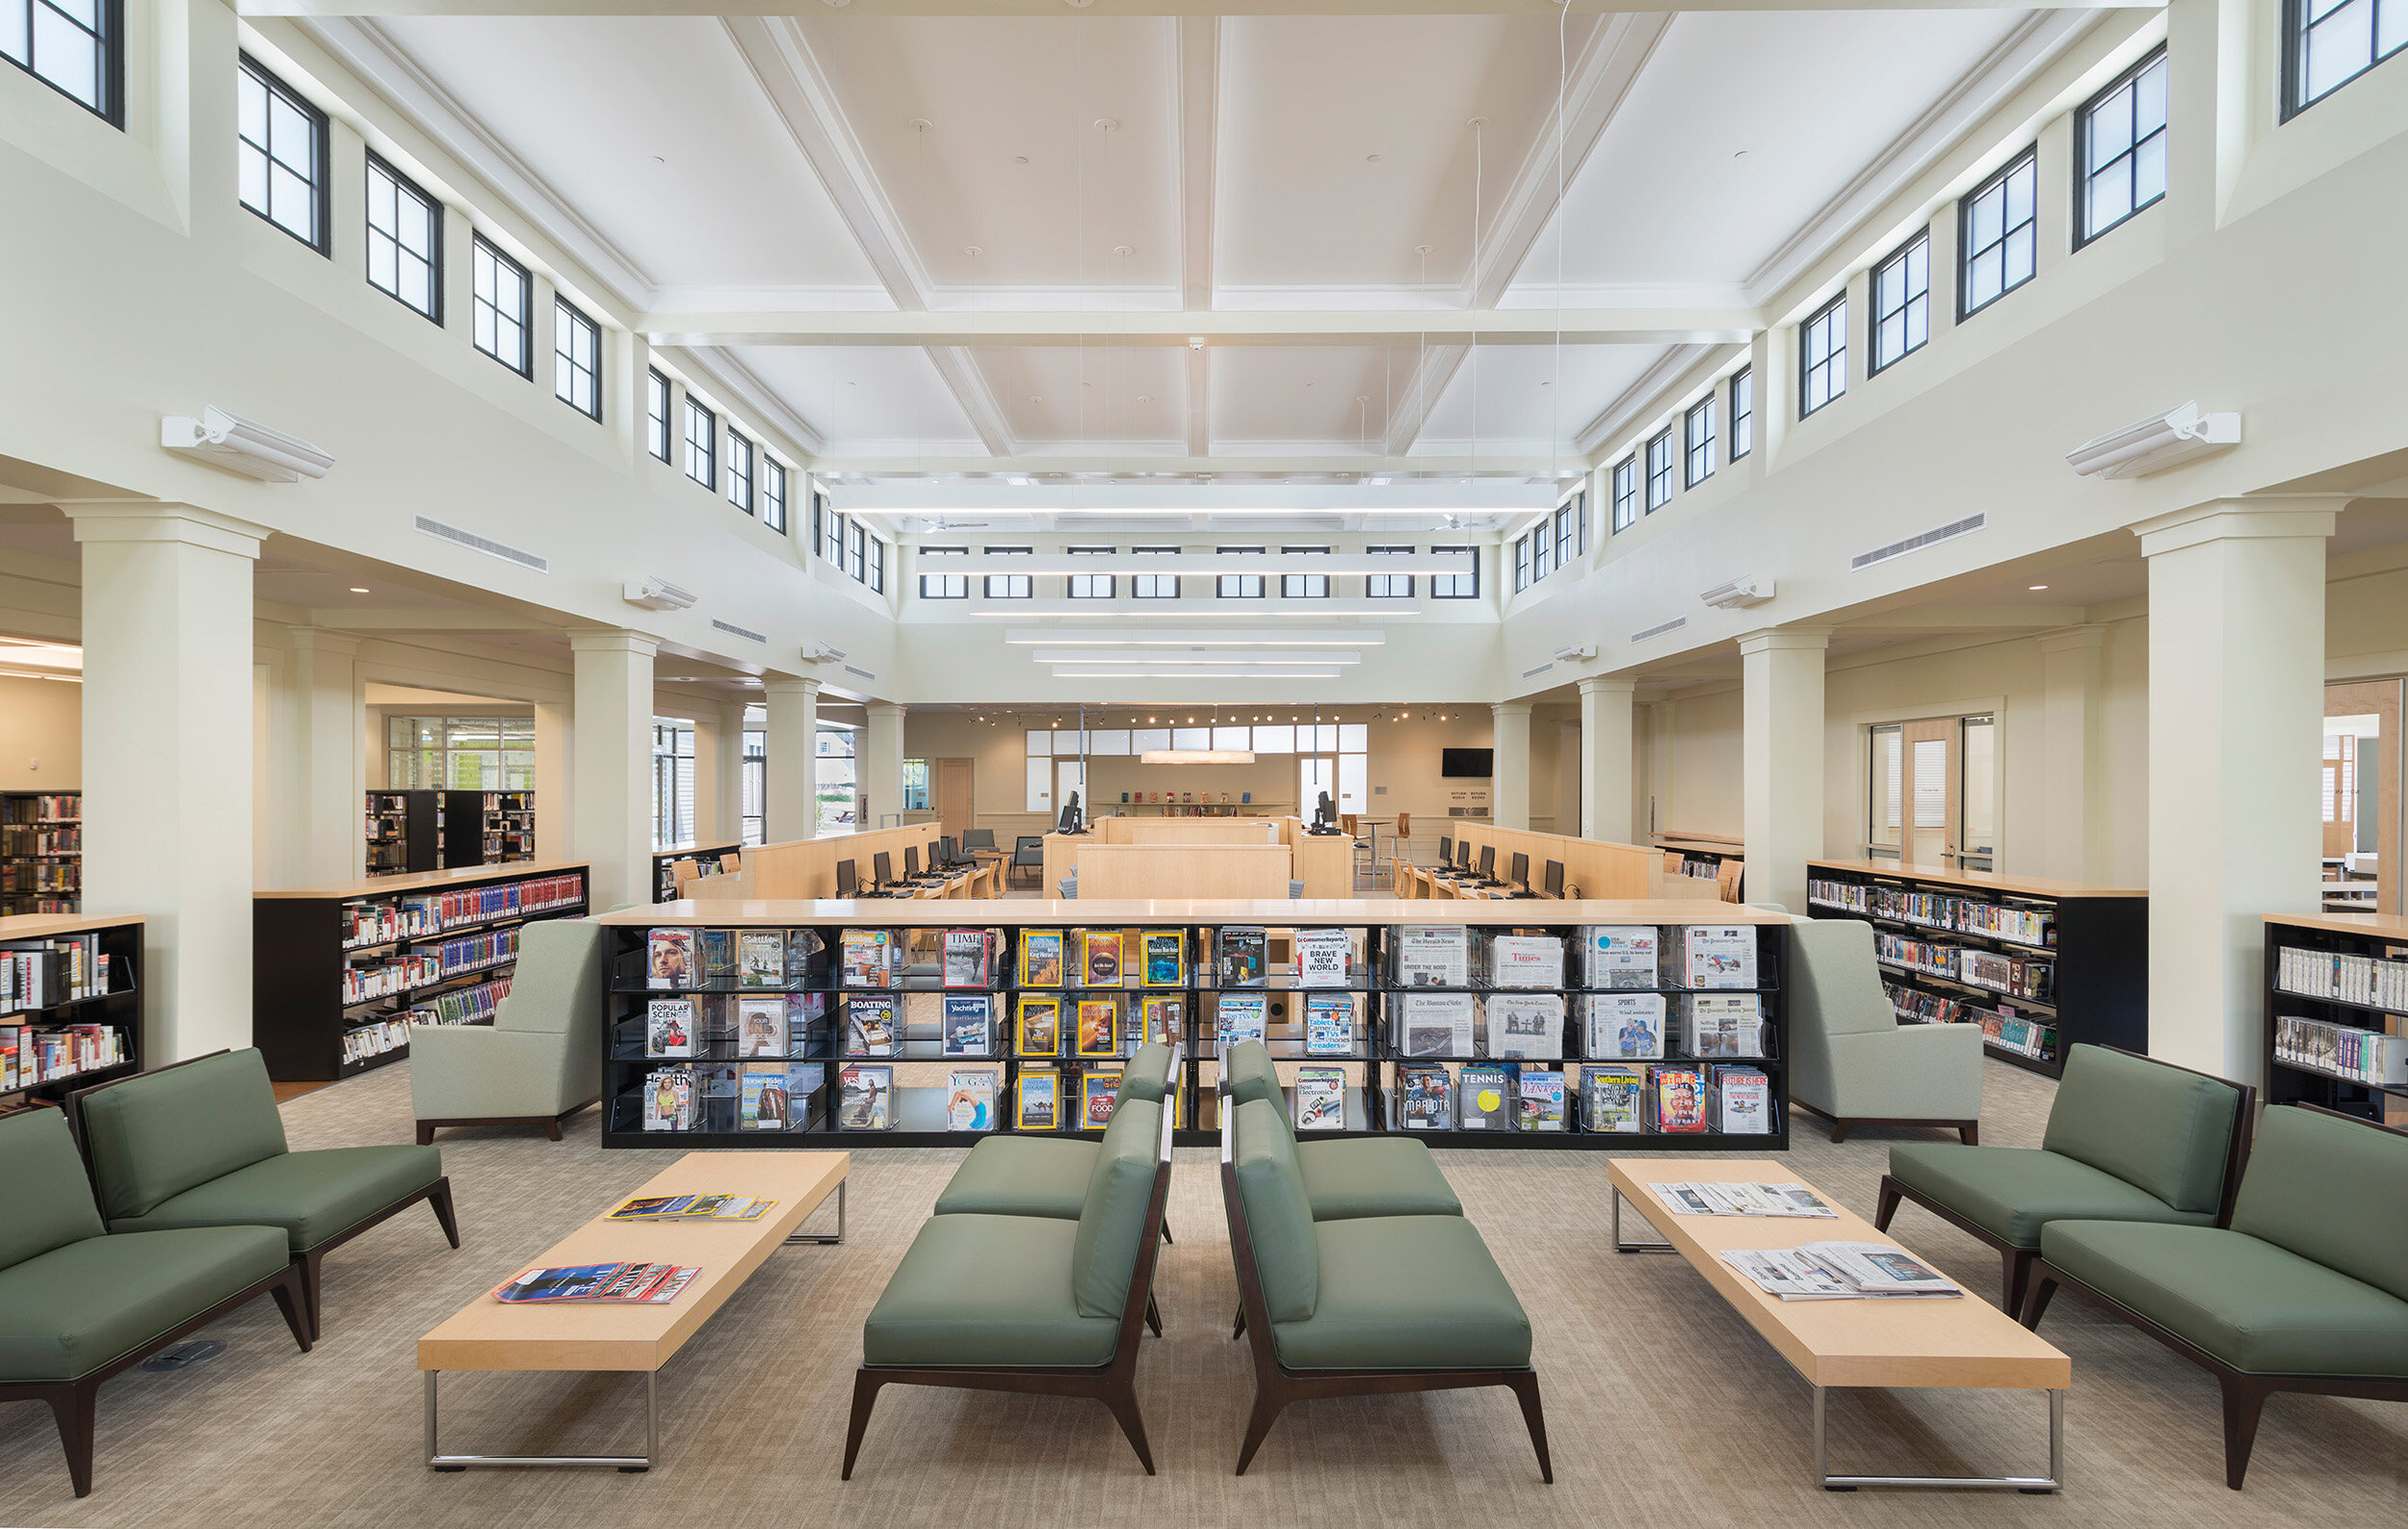  Tiverton Public Library  Union Studio   